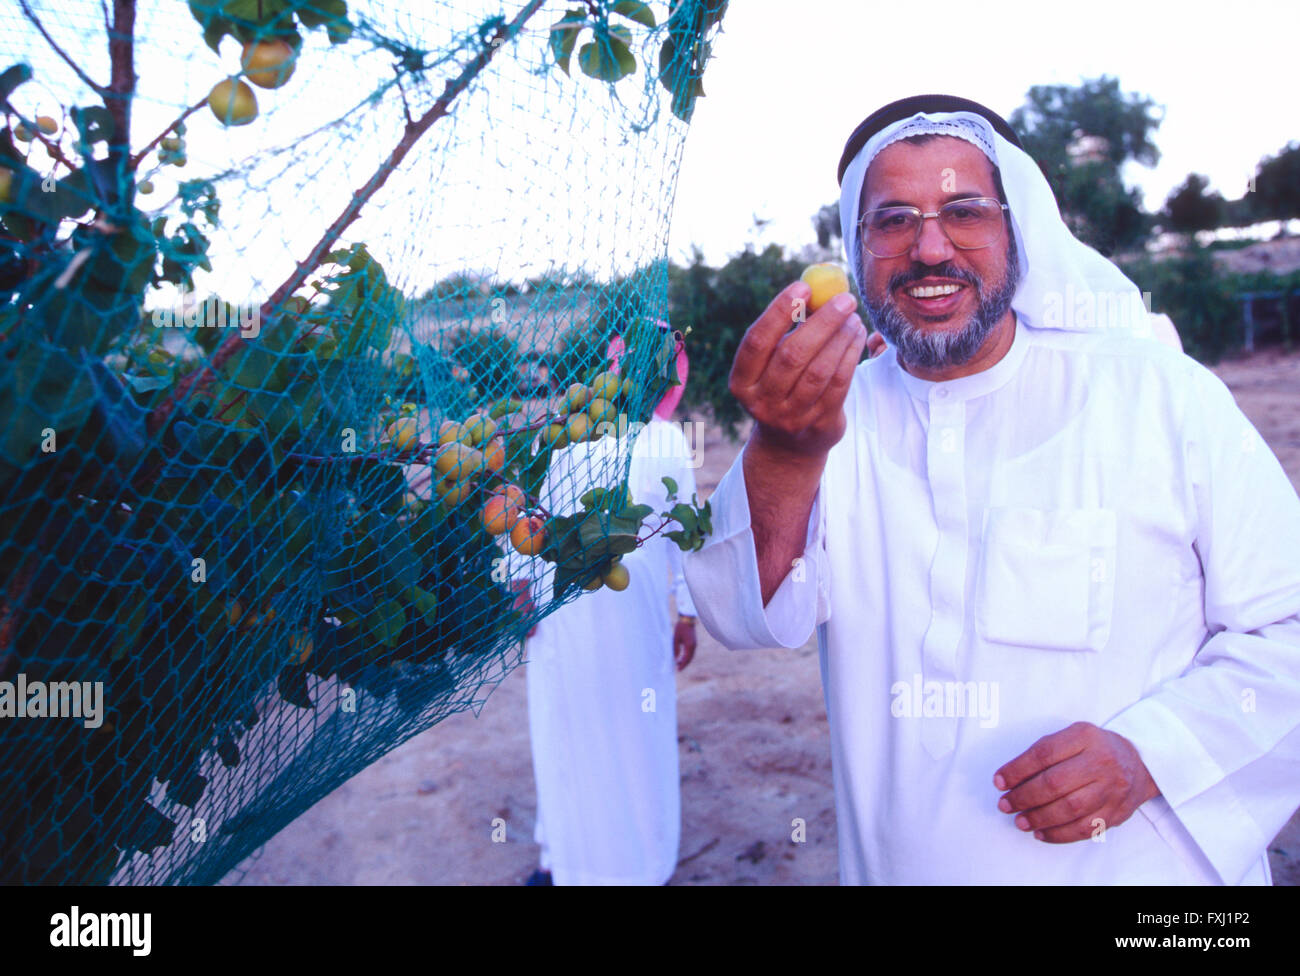 L'homme de l'Arabie en vêtements traditionnels de fruits fraîchement cueillis holding tree farm Banque D'Images